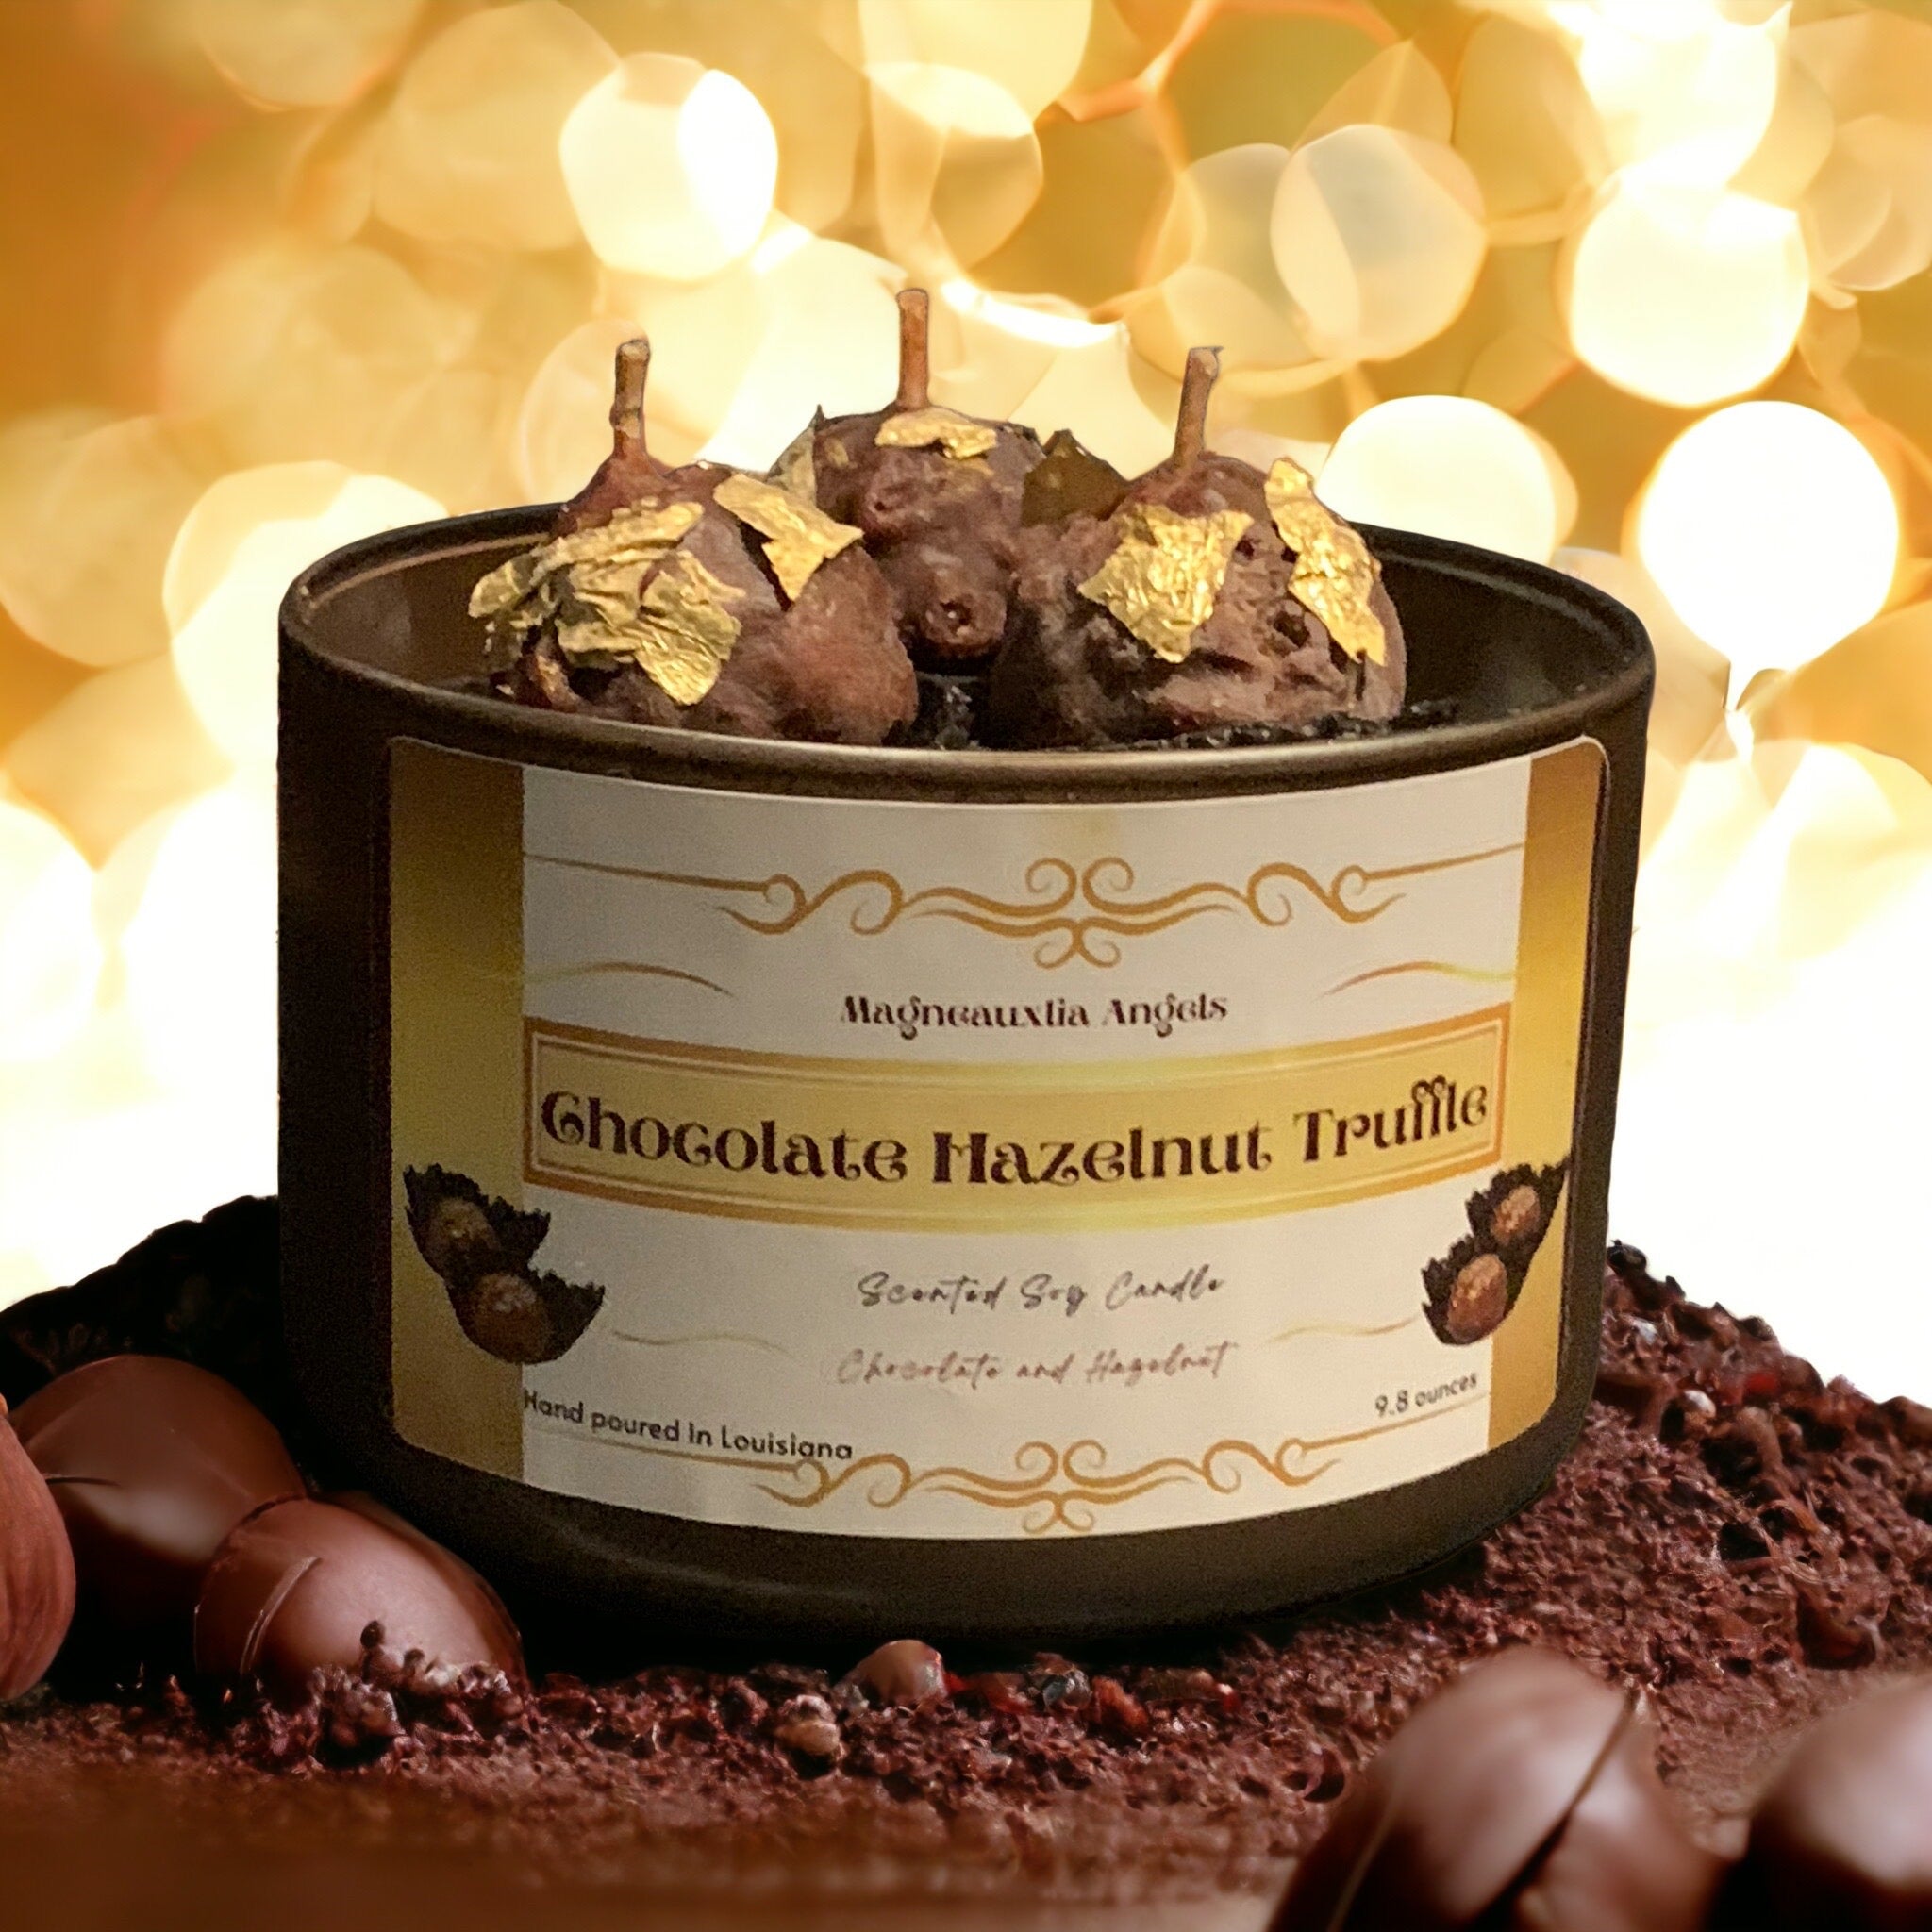 Chocolate Hazelnut Truffle candle